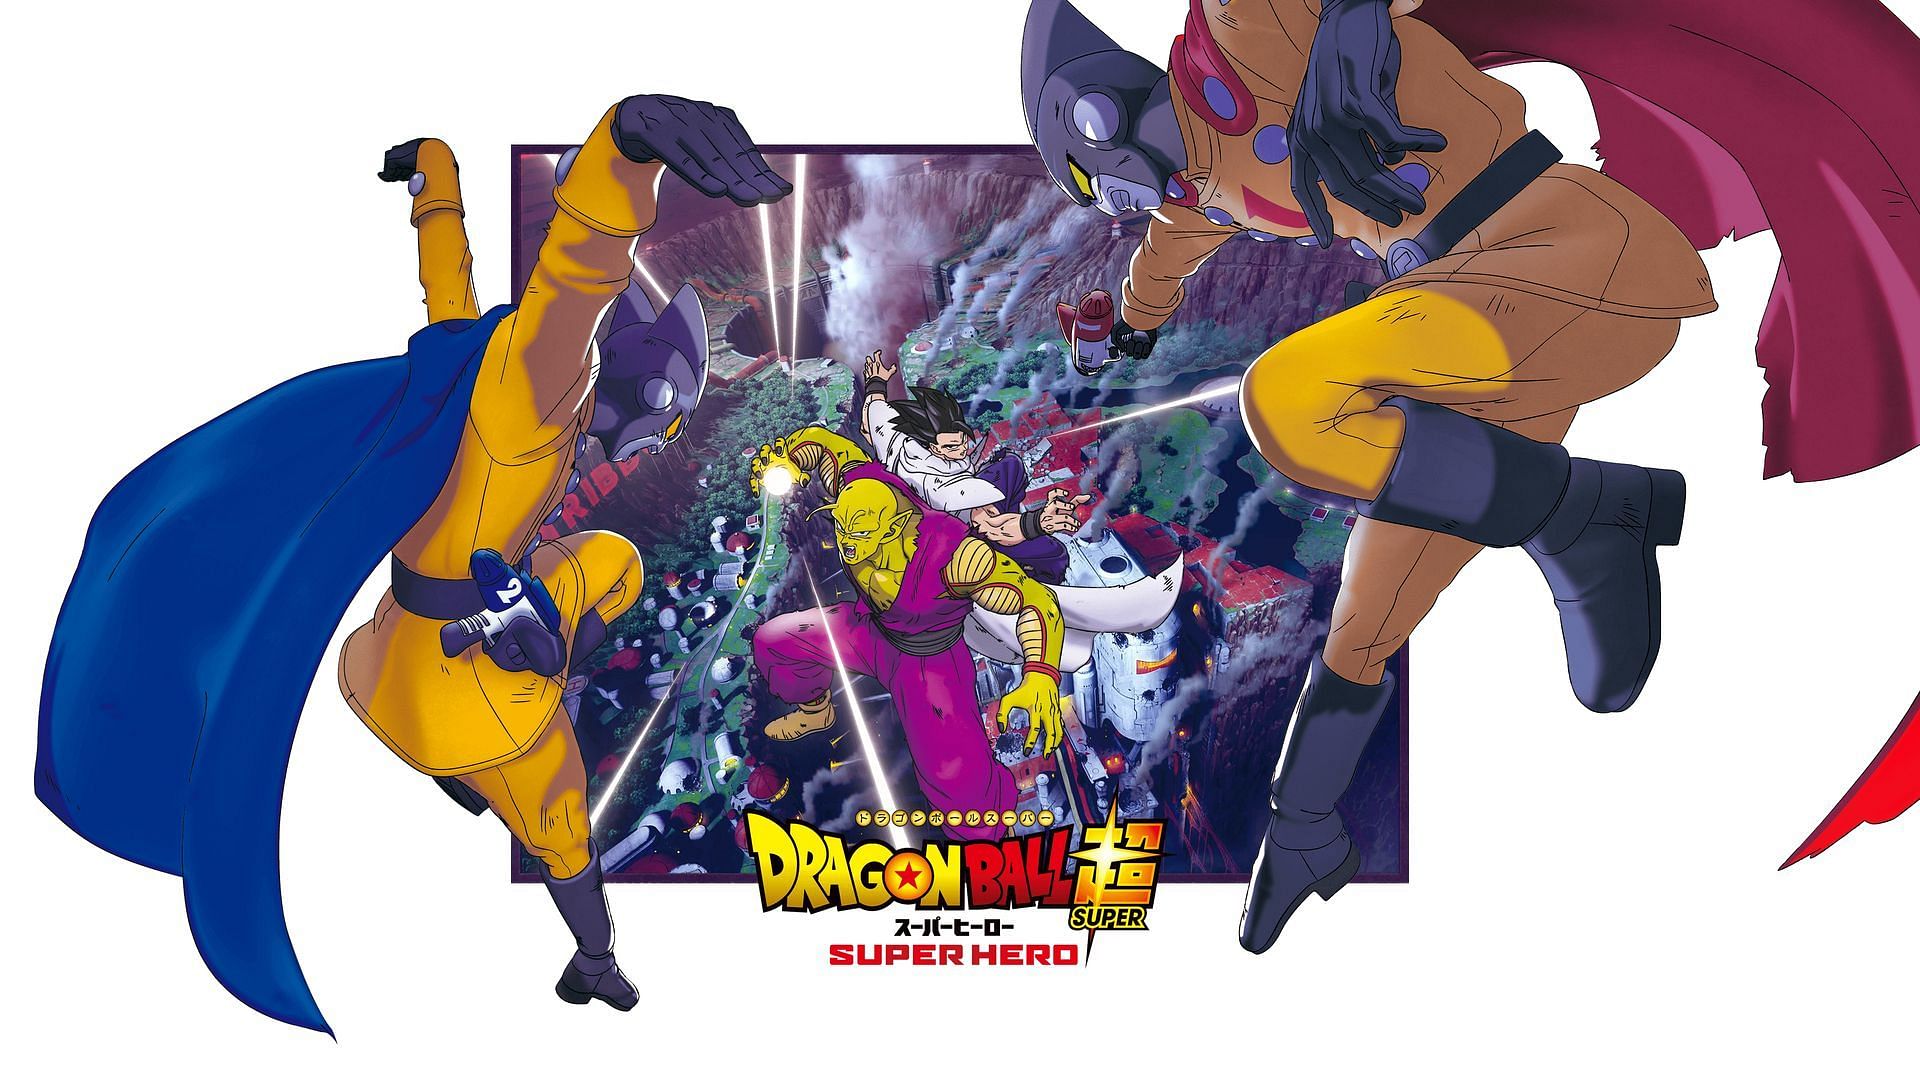 Dragon Ball Super: Super Hero' Merch Teases Ultimate Gohan Returning